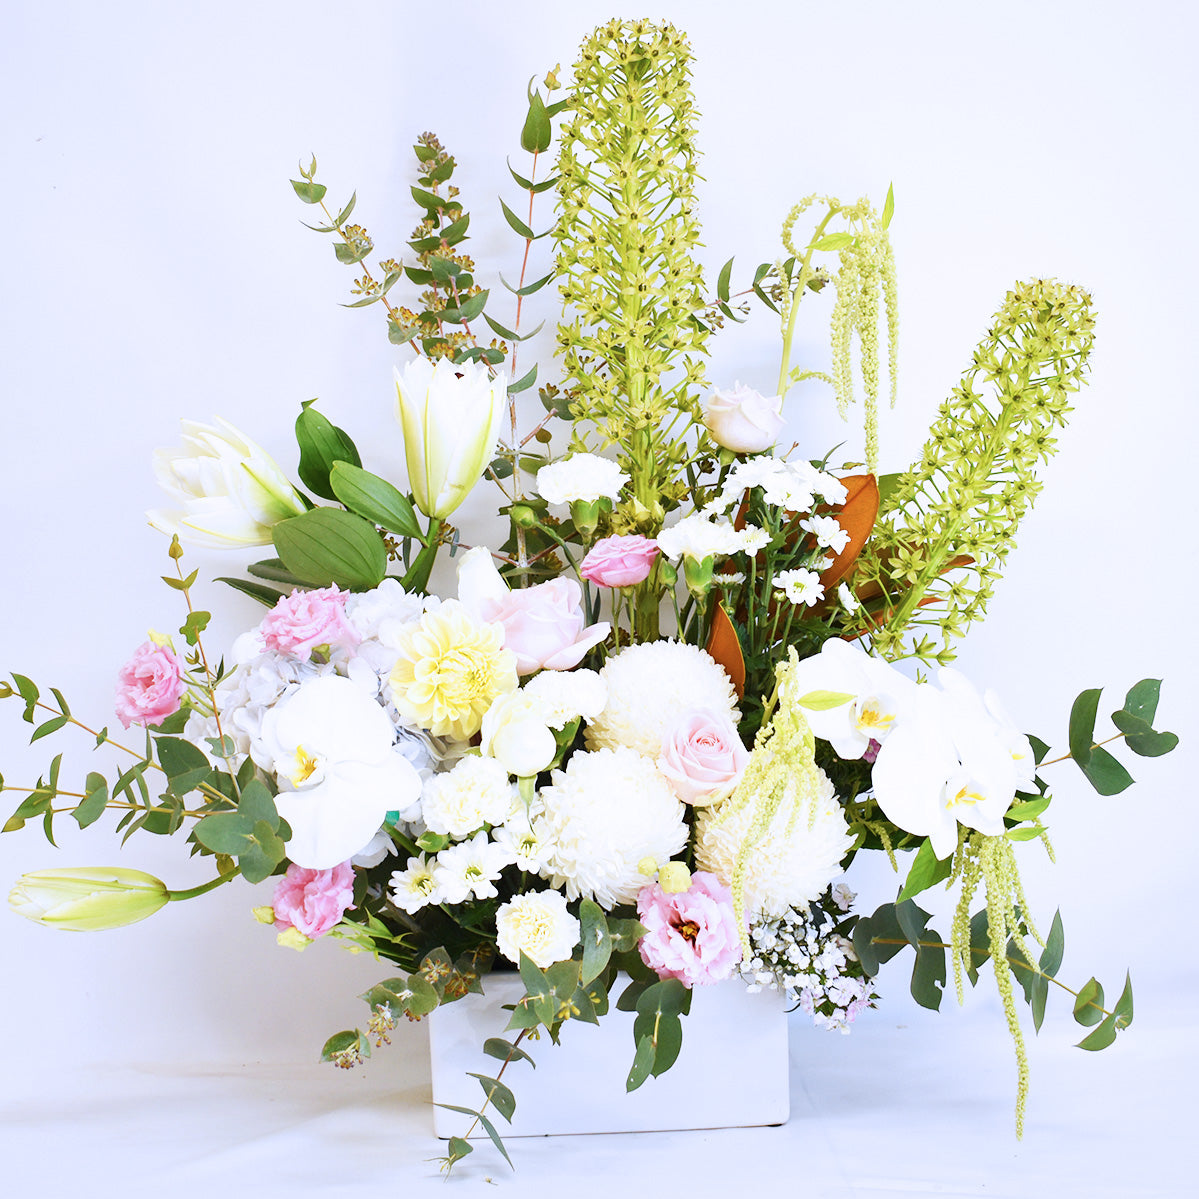 Florist's Premium Spring Blossoms + Ceramic Pot!